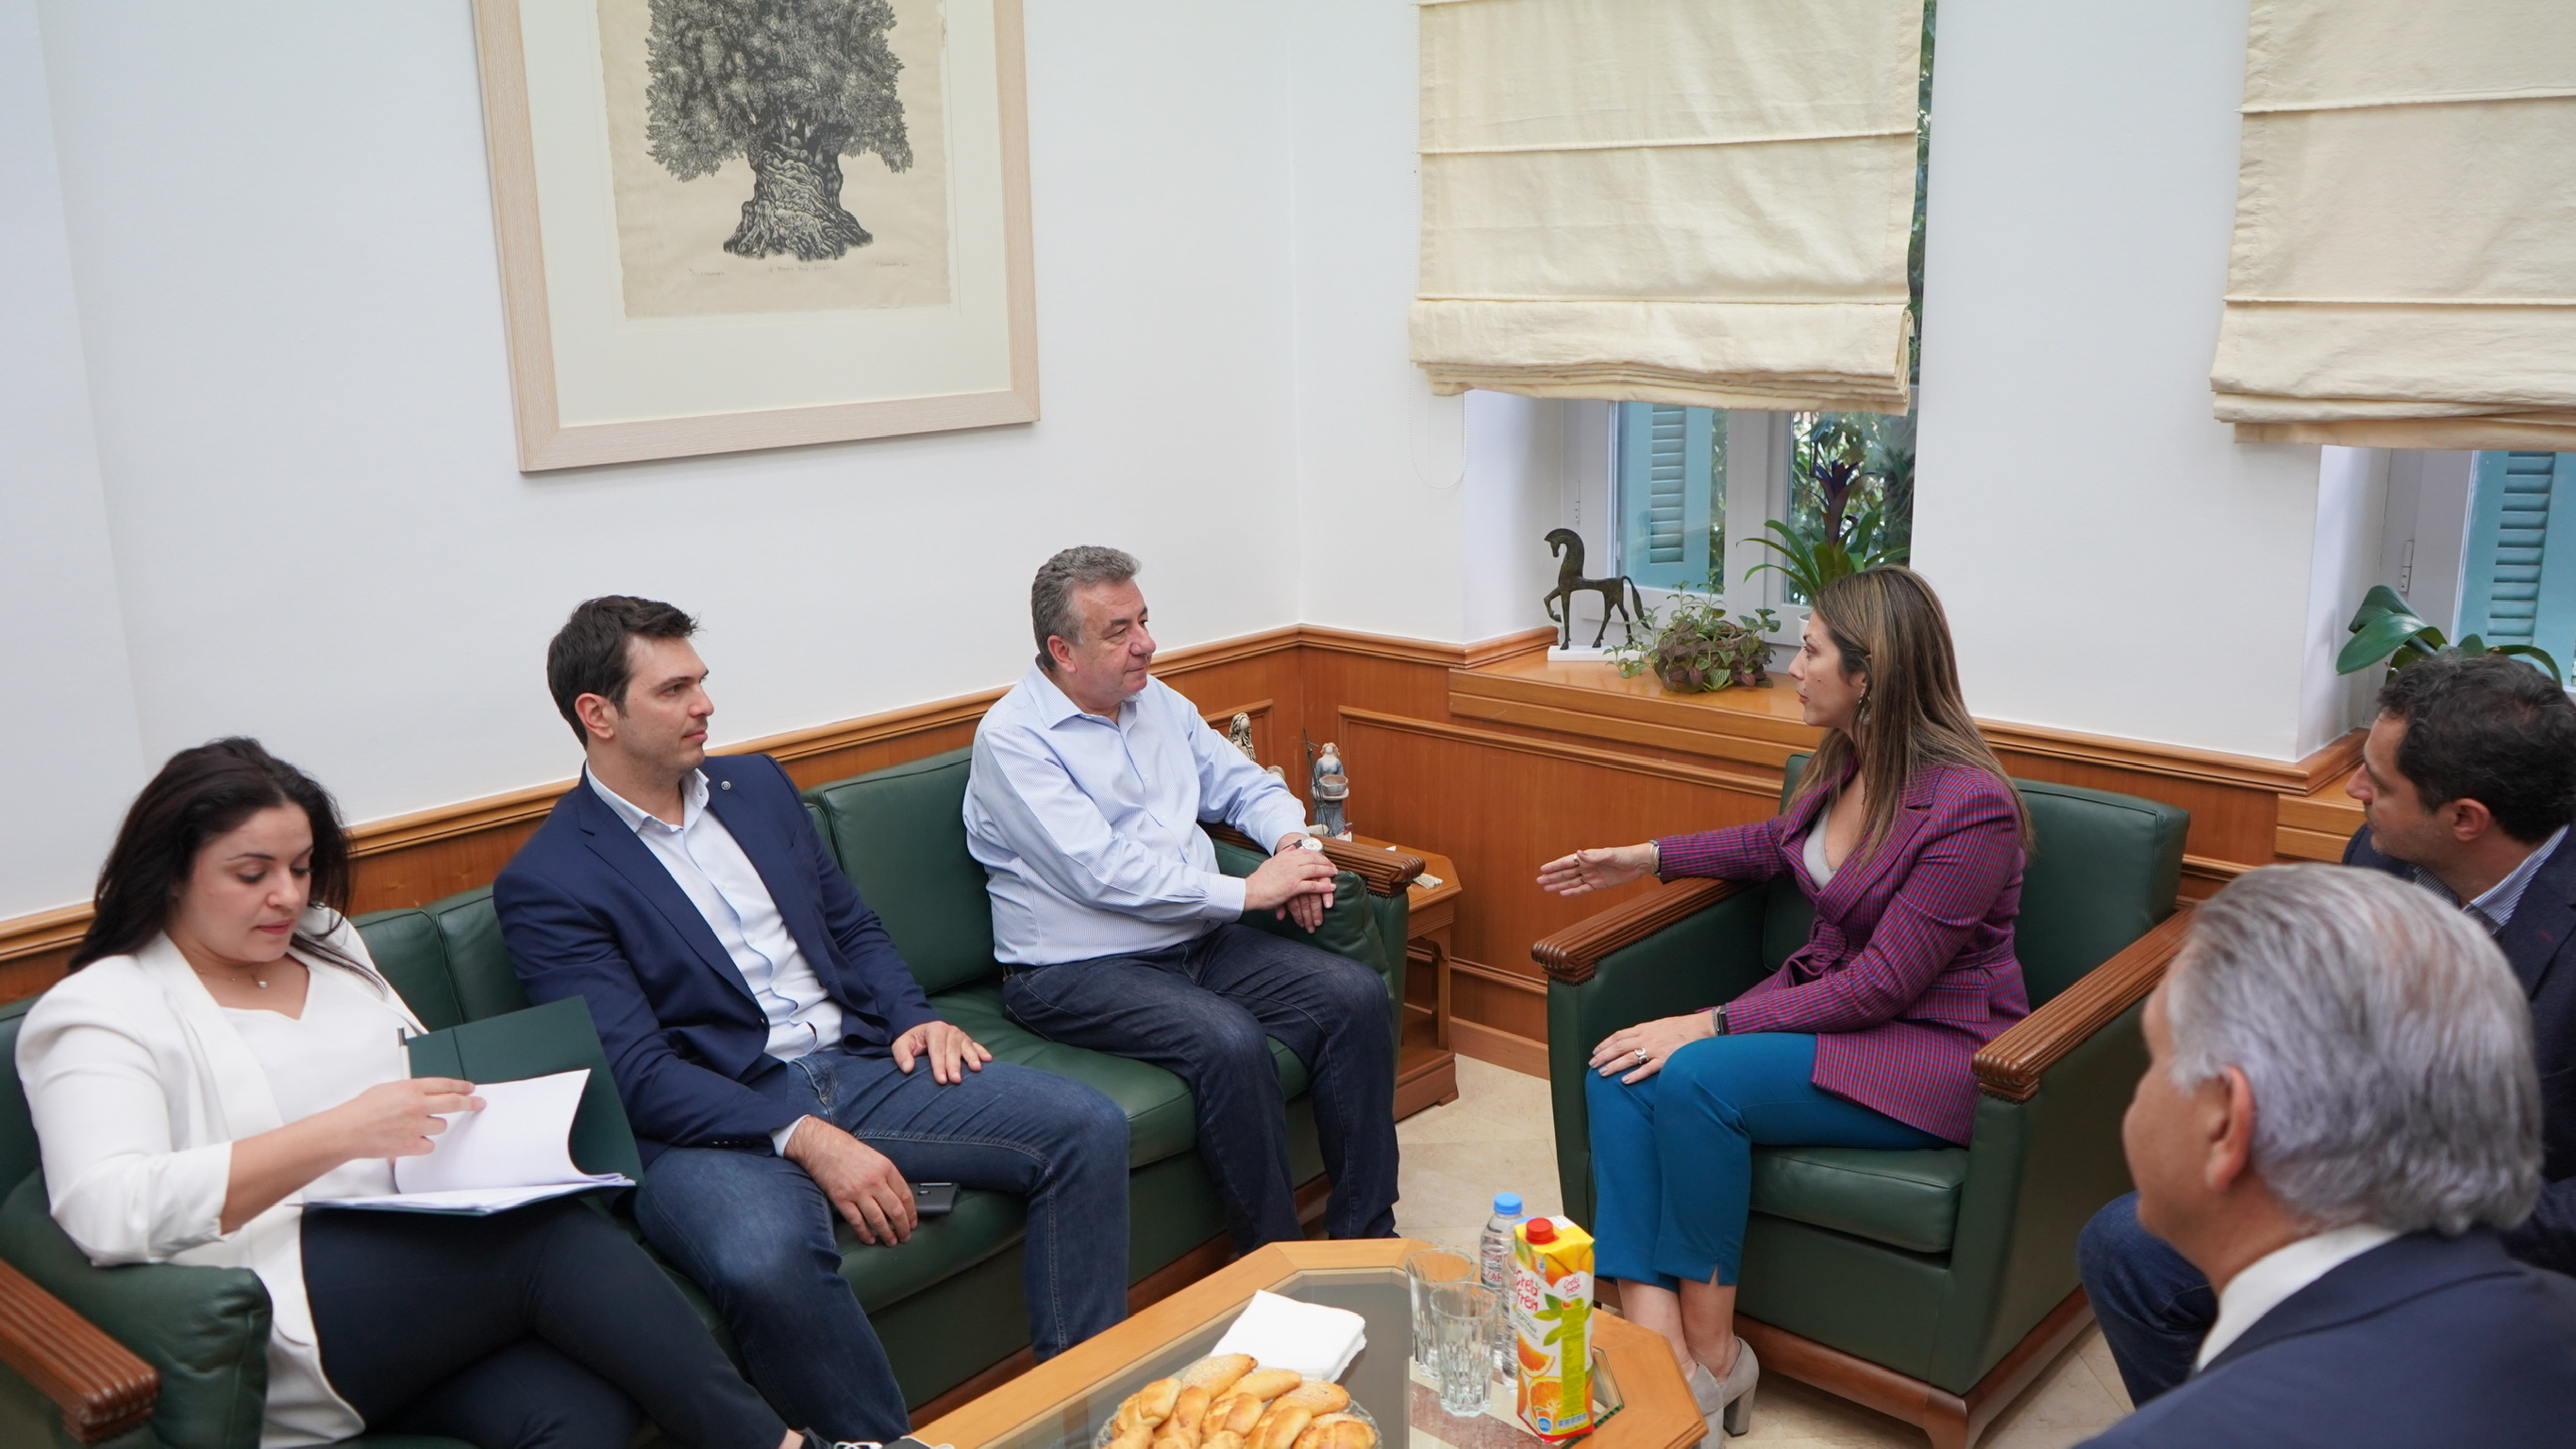 Θέματα παιδείας συζητήθηκαν στην επίσκεψη της υφυπουργού Παιδείας στην Περιφέρεια Κρήτης